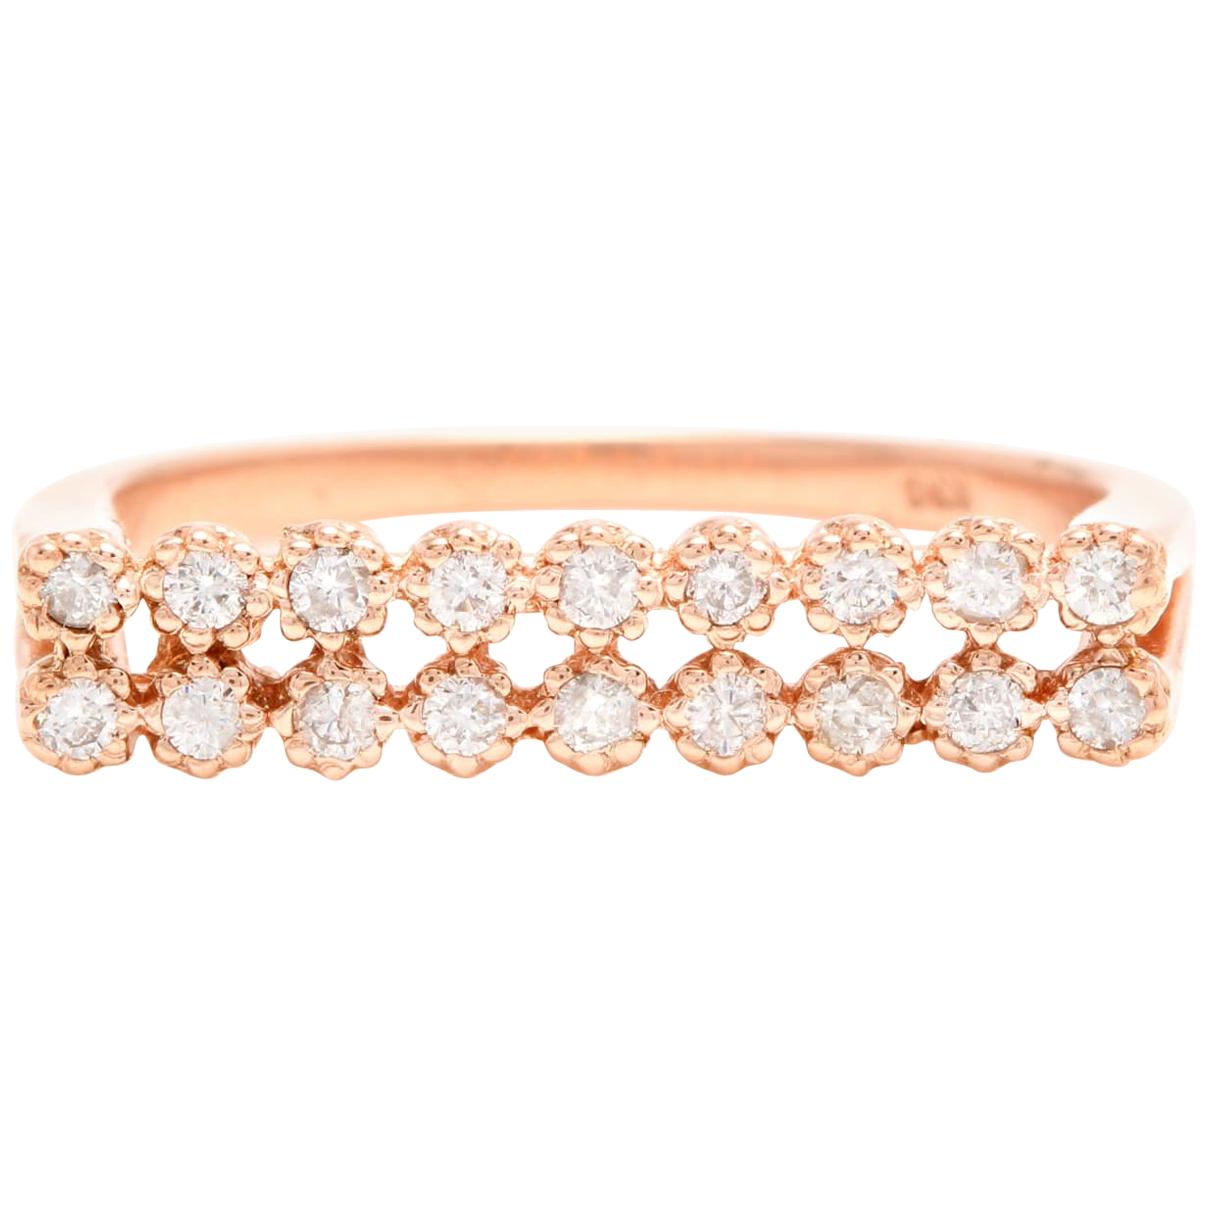 Splendide bague en or rose massif 14 carats avec diamant naturel de 0,25 carat